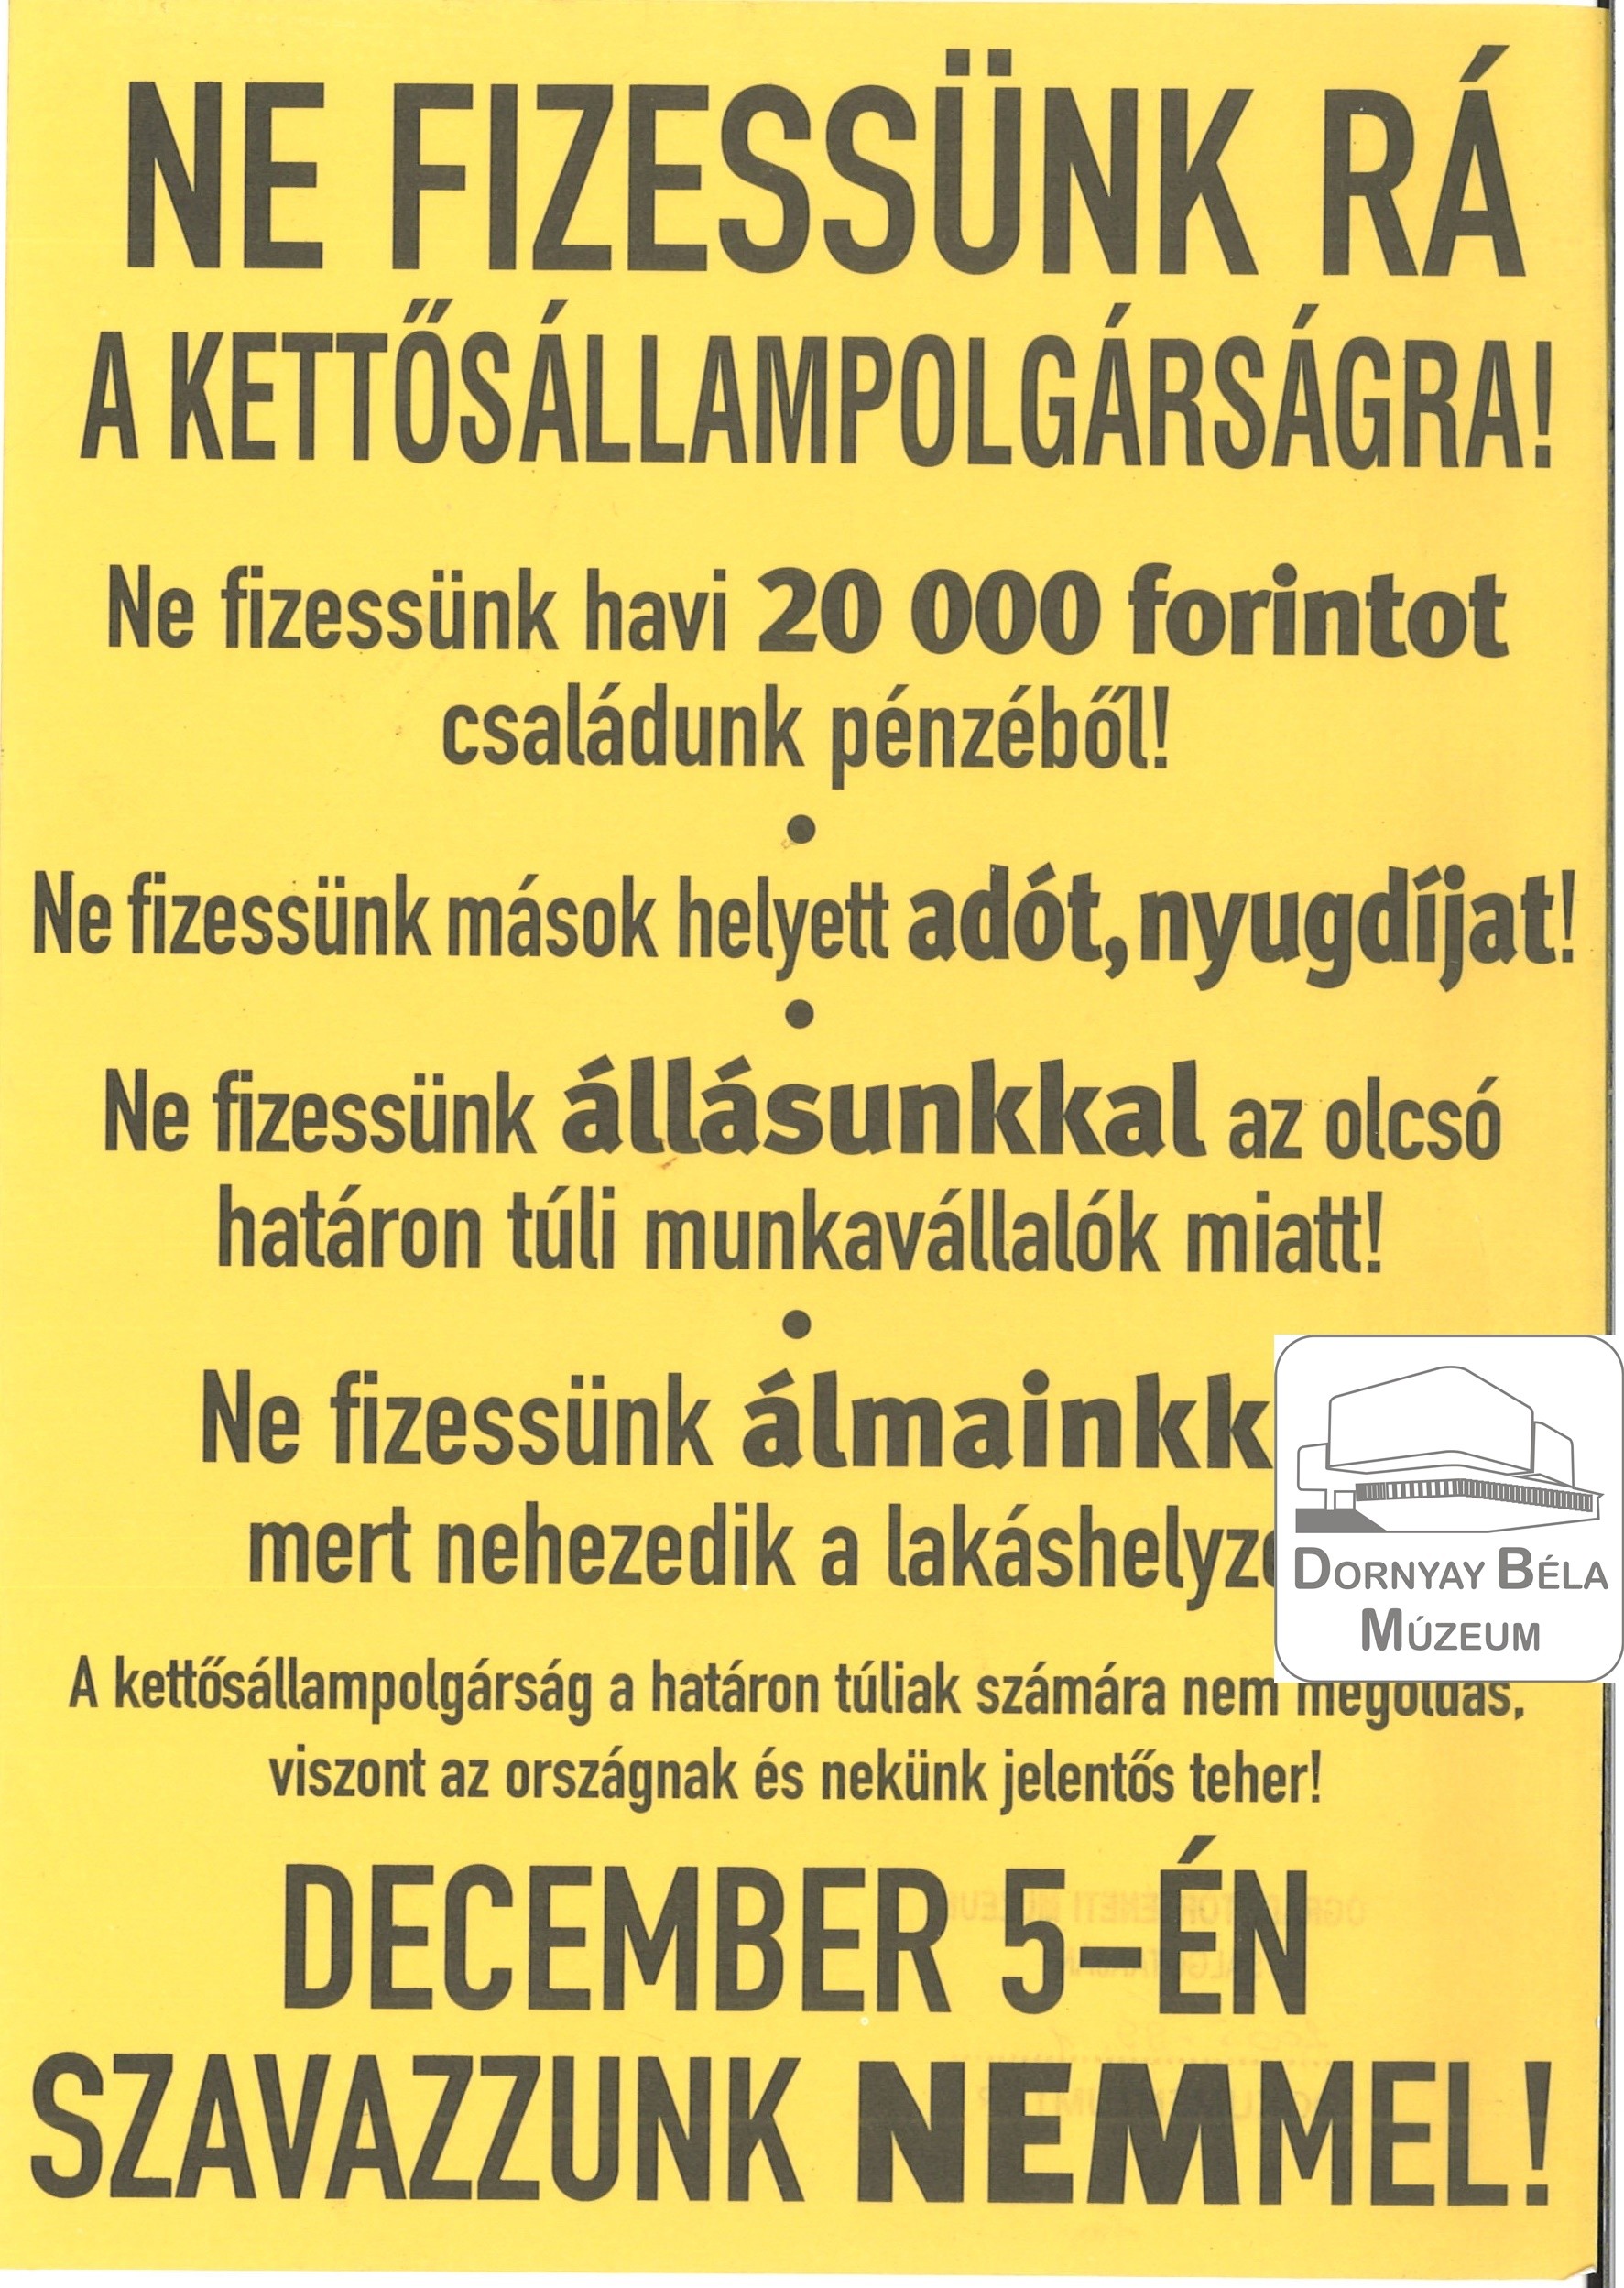 Ne fizessünk rá a kettős állampolgárságra. December 5-én szavazzunk nemmel! (Dornyay Béla Múzeum, Salgótarján CC BY-NC-SA)